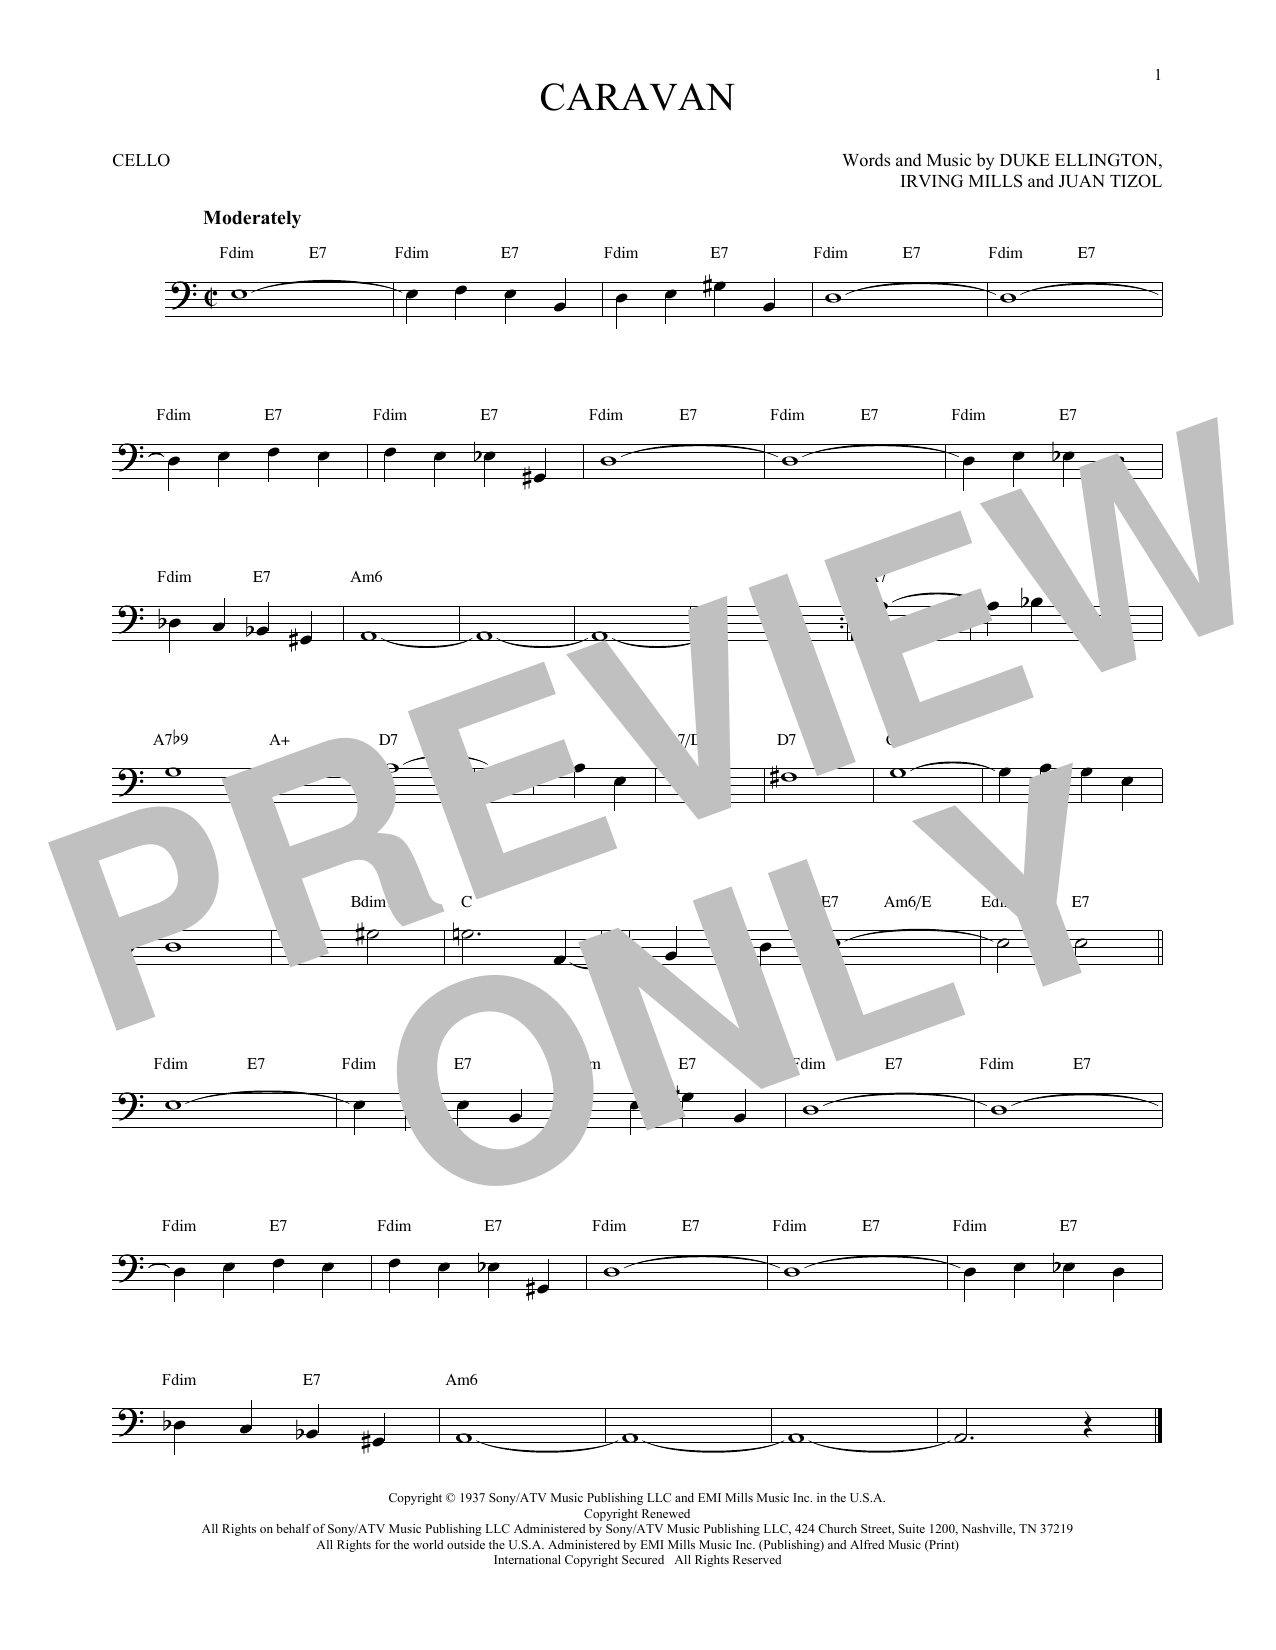 Download Juan Tizol & Duke Ellington Caravan Sheet Music and learn how to play Viola PDF digital score in minutes